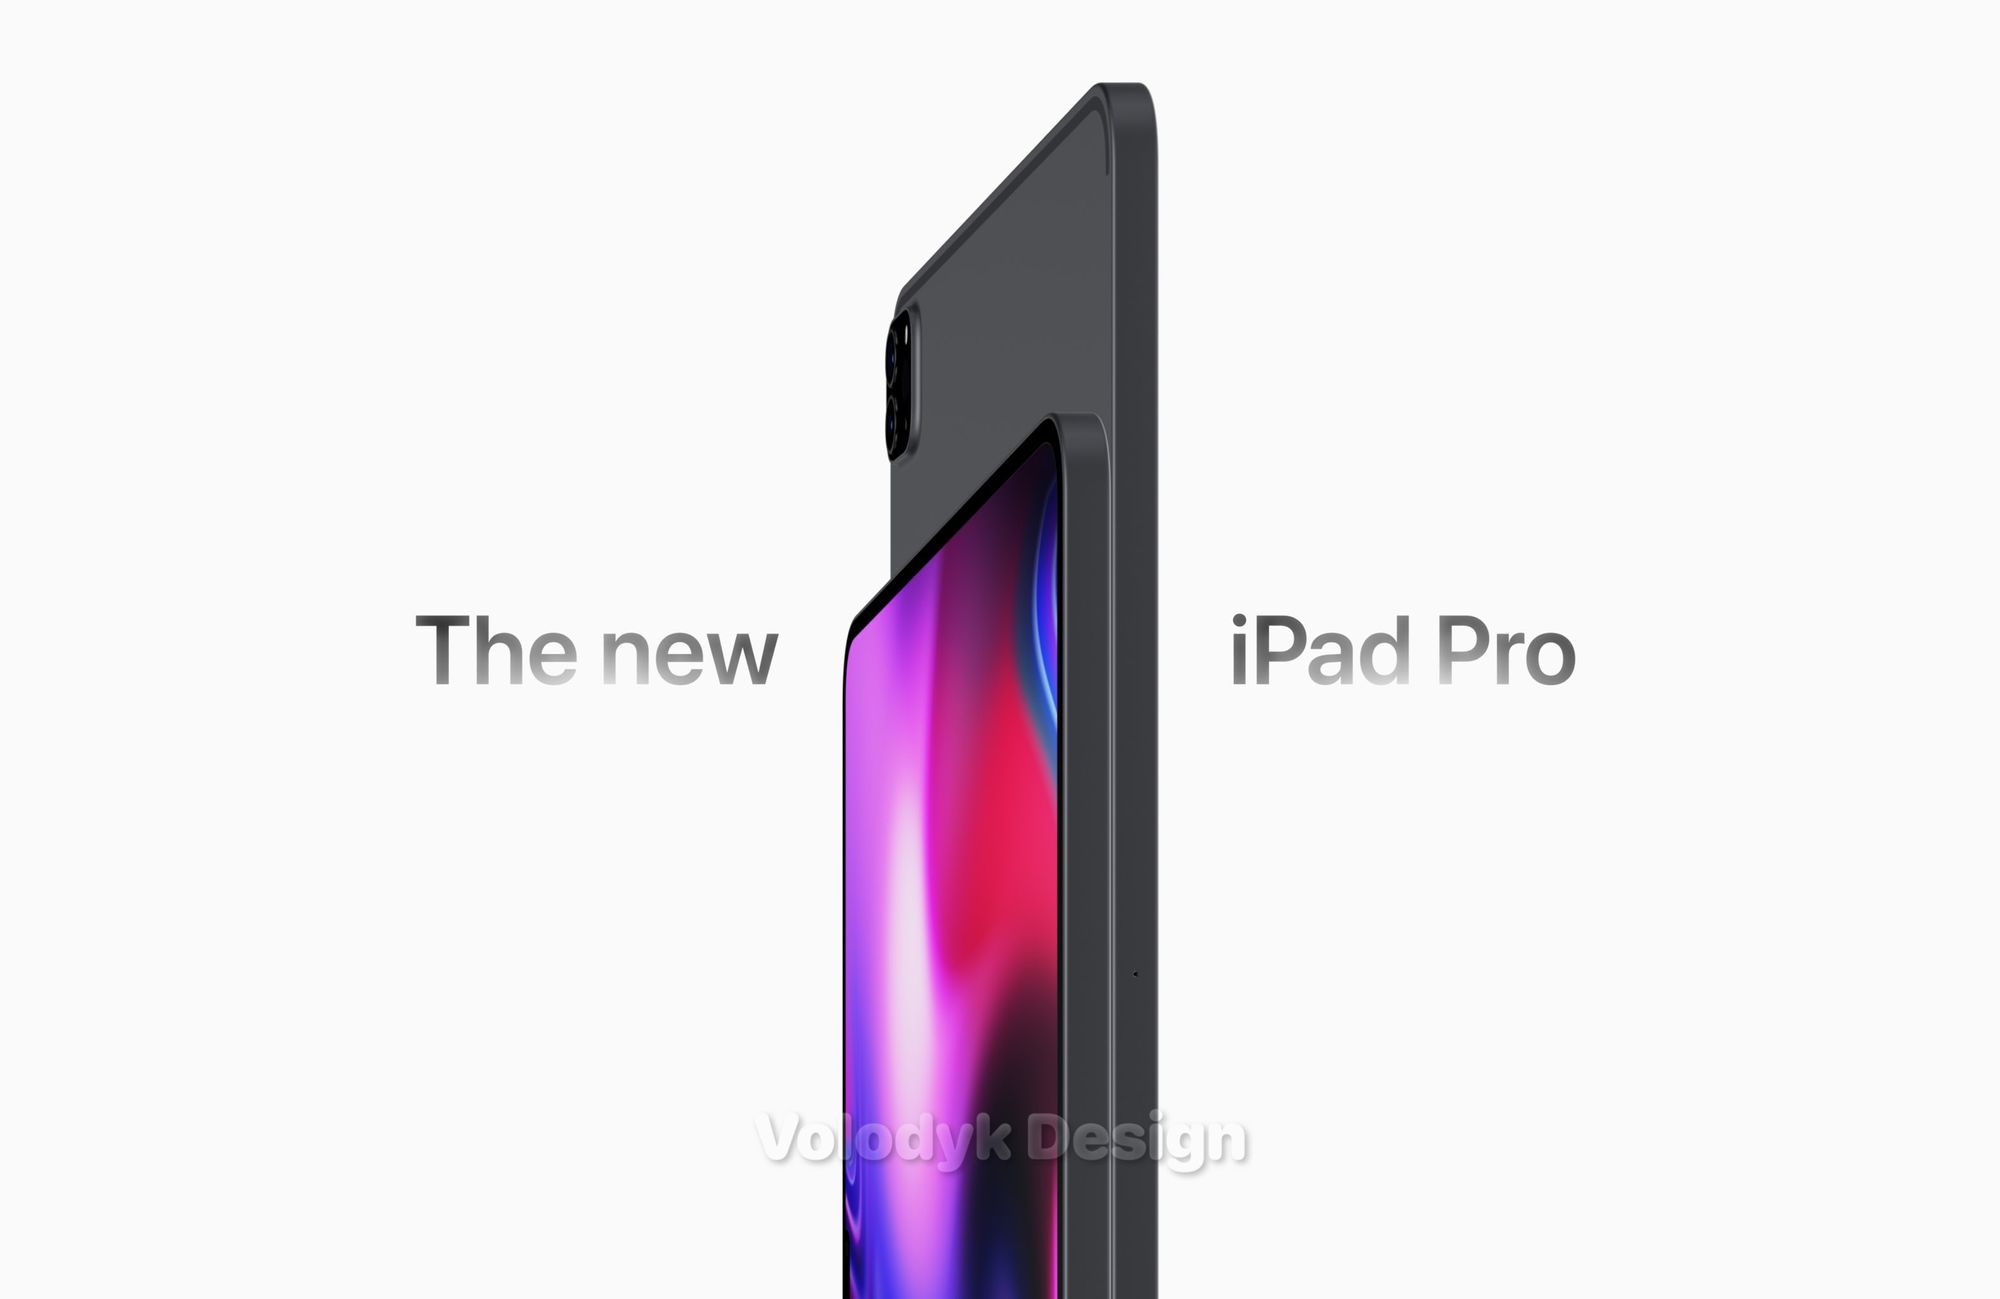 Duas unidades de um conceito de um novo iPad Pro encostadas. Vemos o ecrã do iPad da esquerda e a traseira do da direita, que está mais acima.